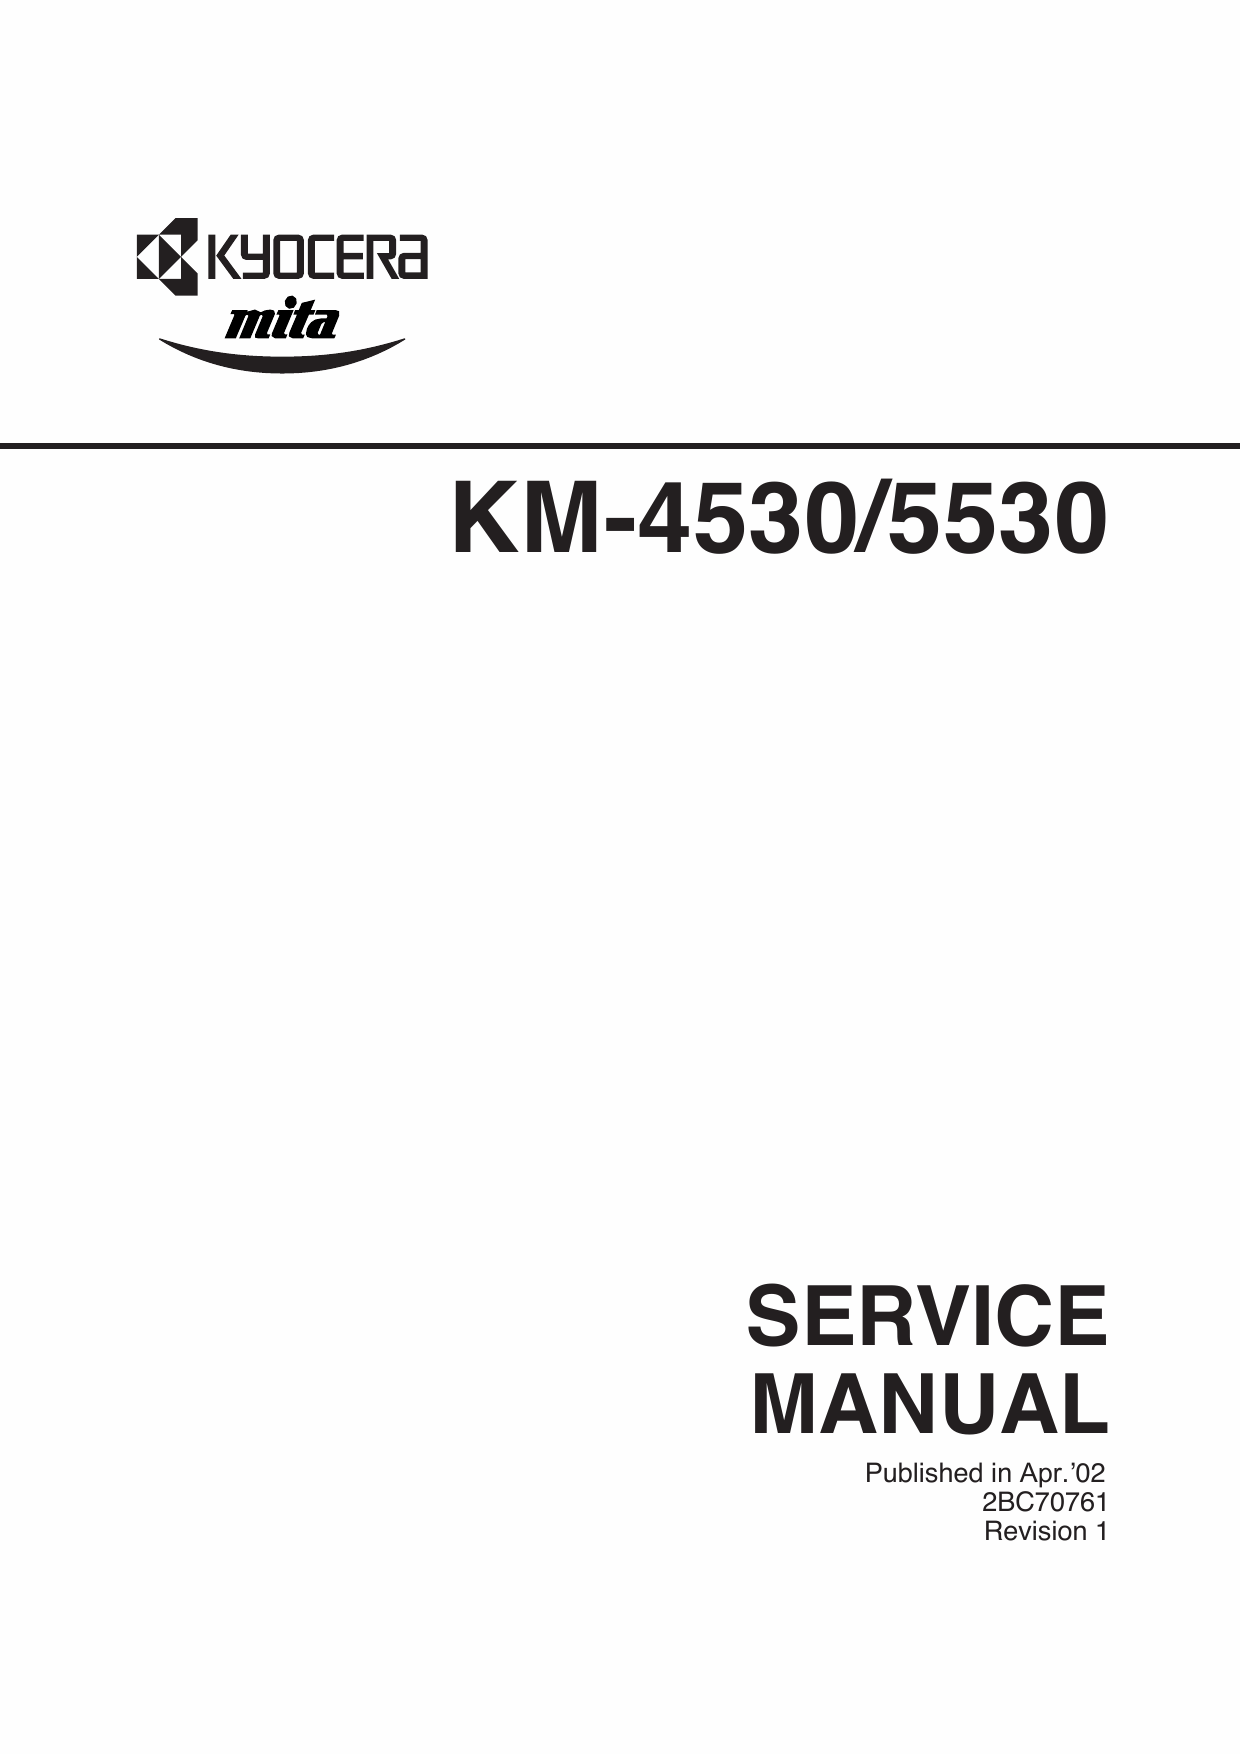 KYOCERA Copier KM-4530 KM-5530 Parts and Service Manual-1